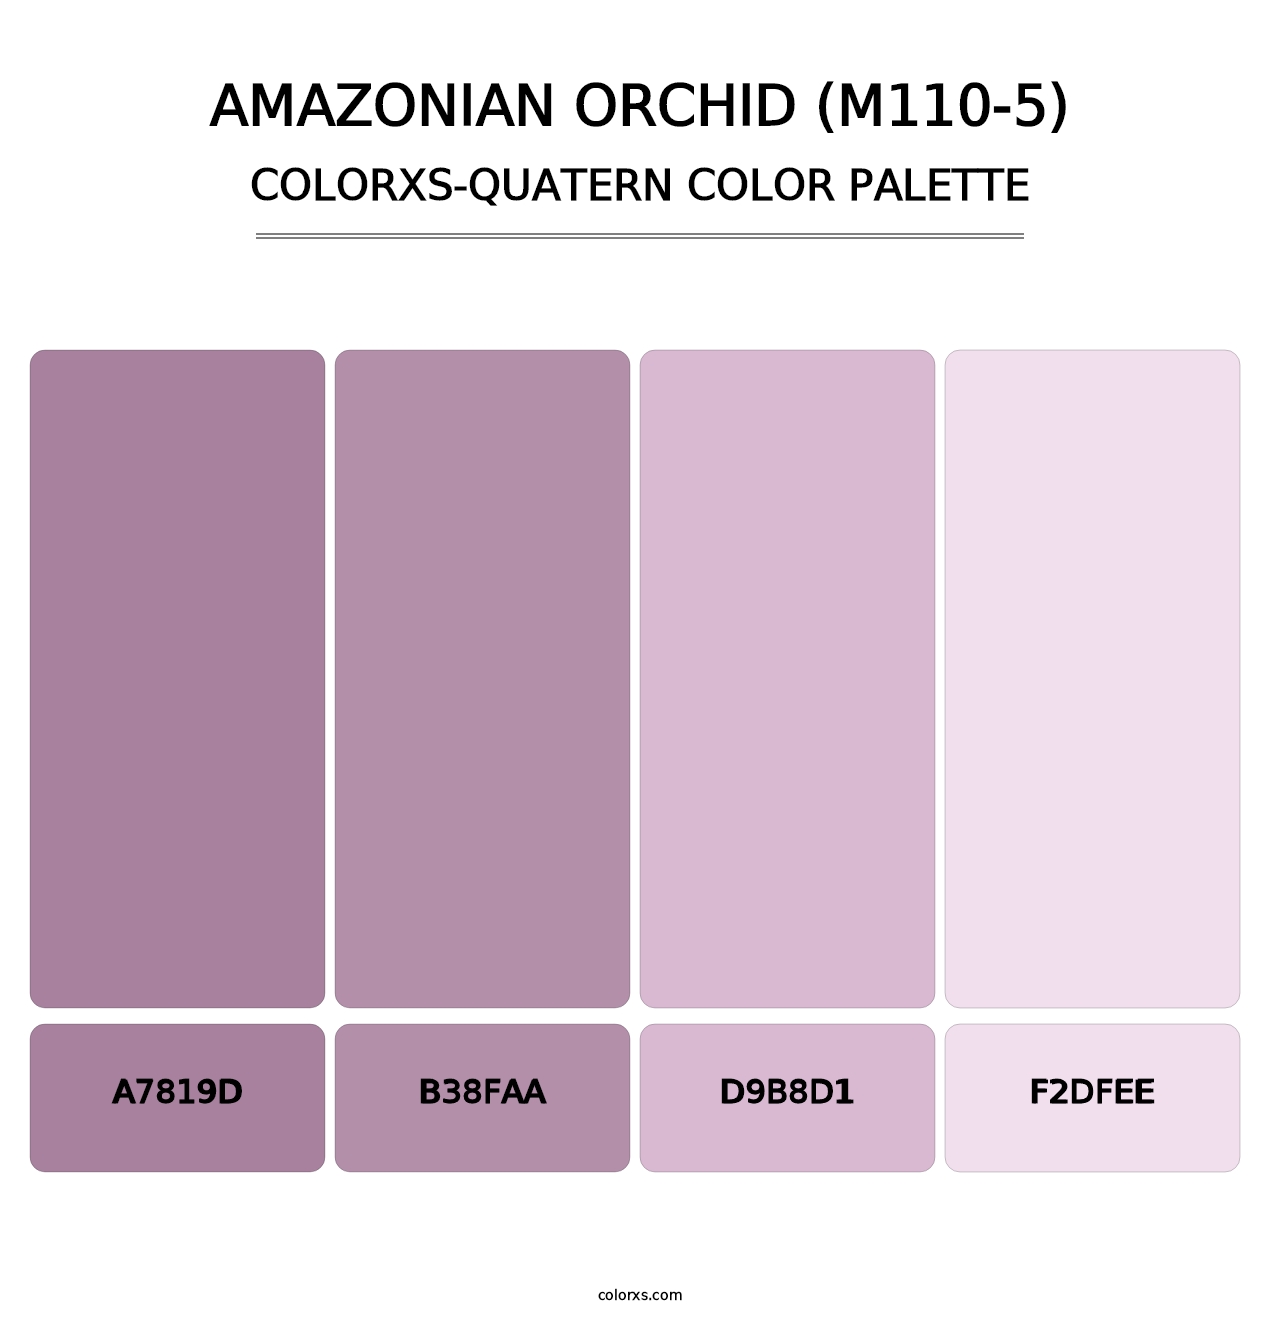 Amazonian Orchid (M110-5) - Colorxs Quatern Palette